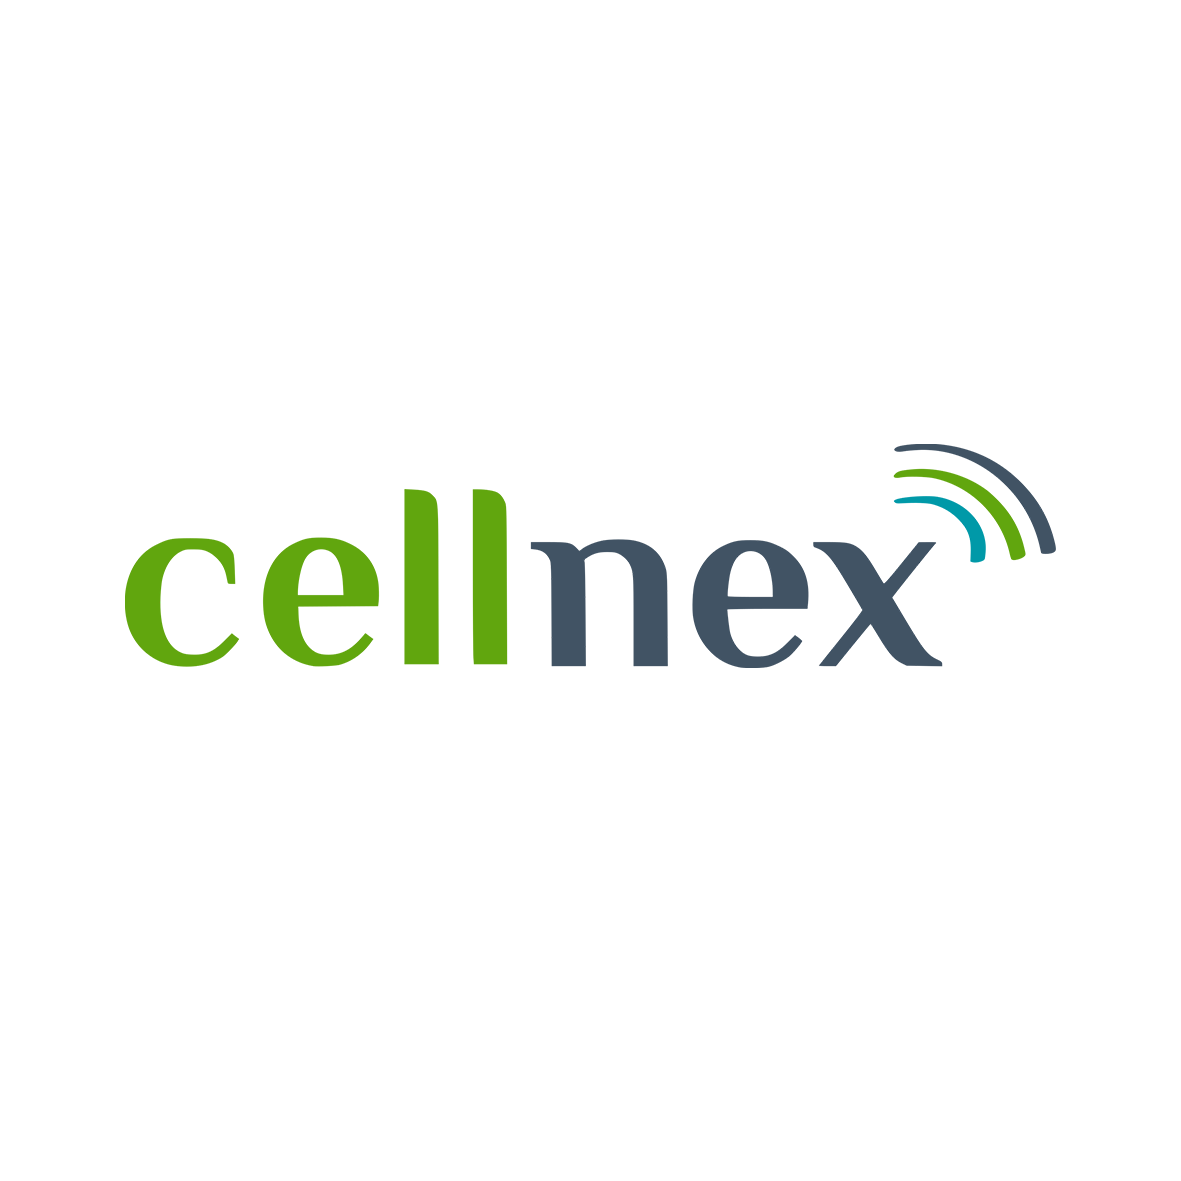 Cellnex